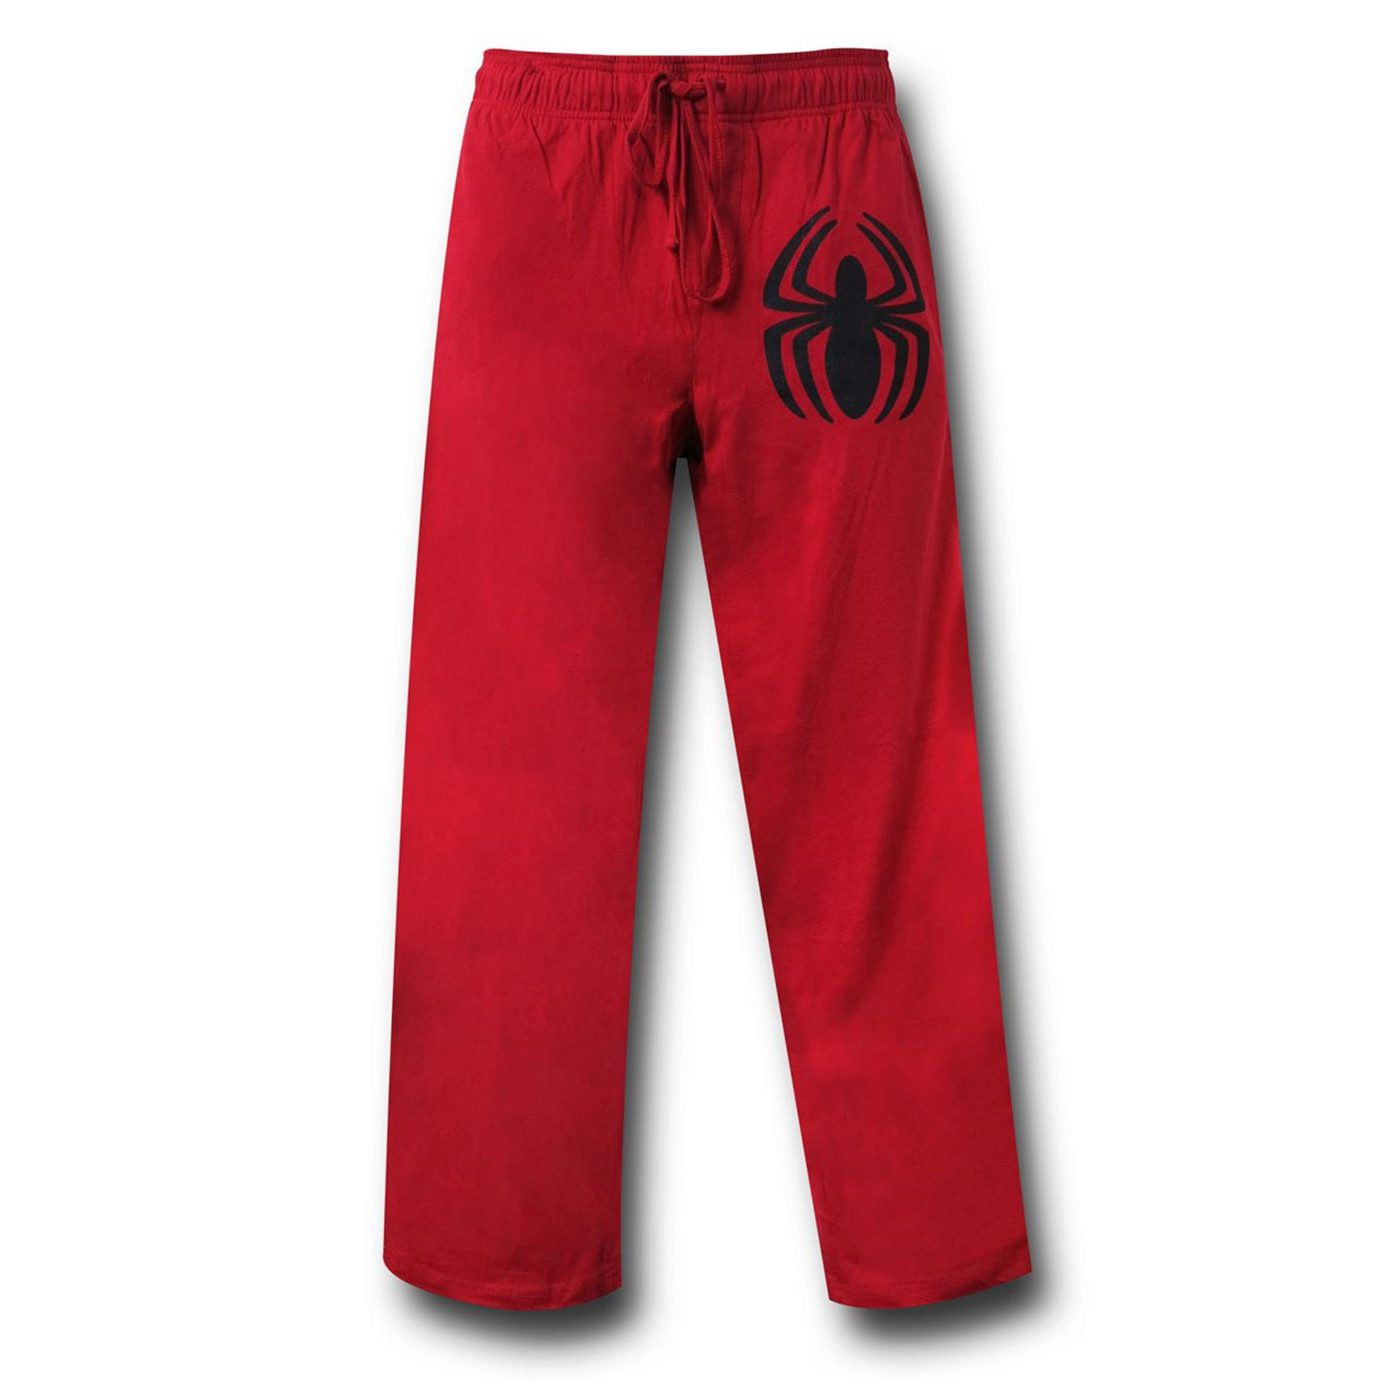 Spiderman Symbol Red Pajama Pants